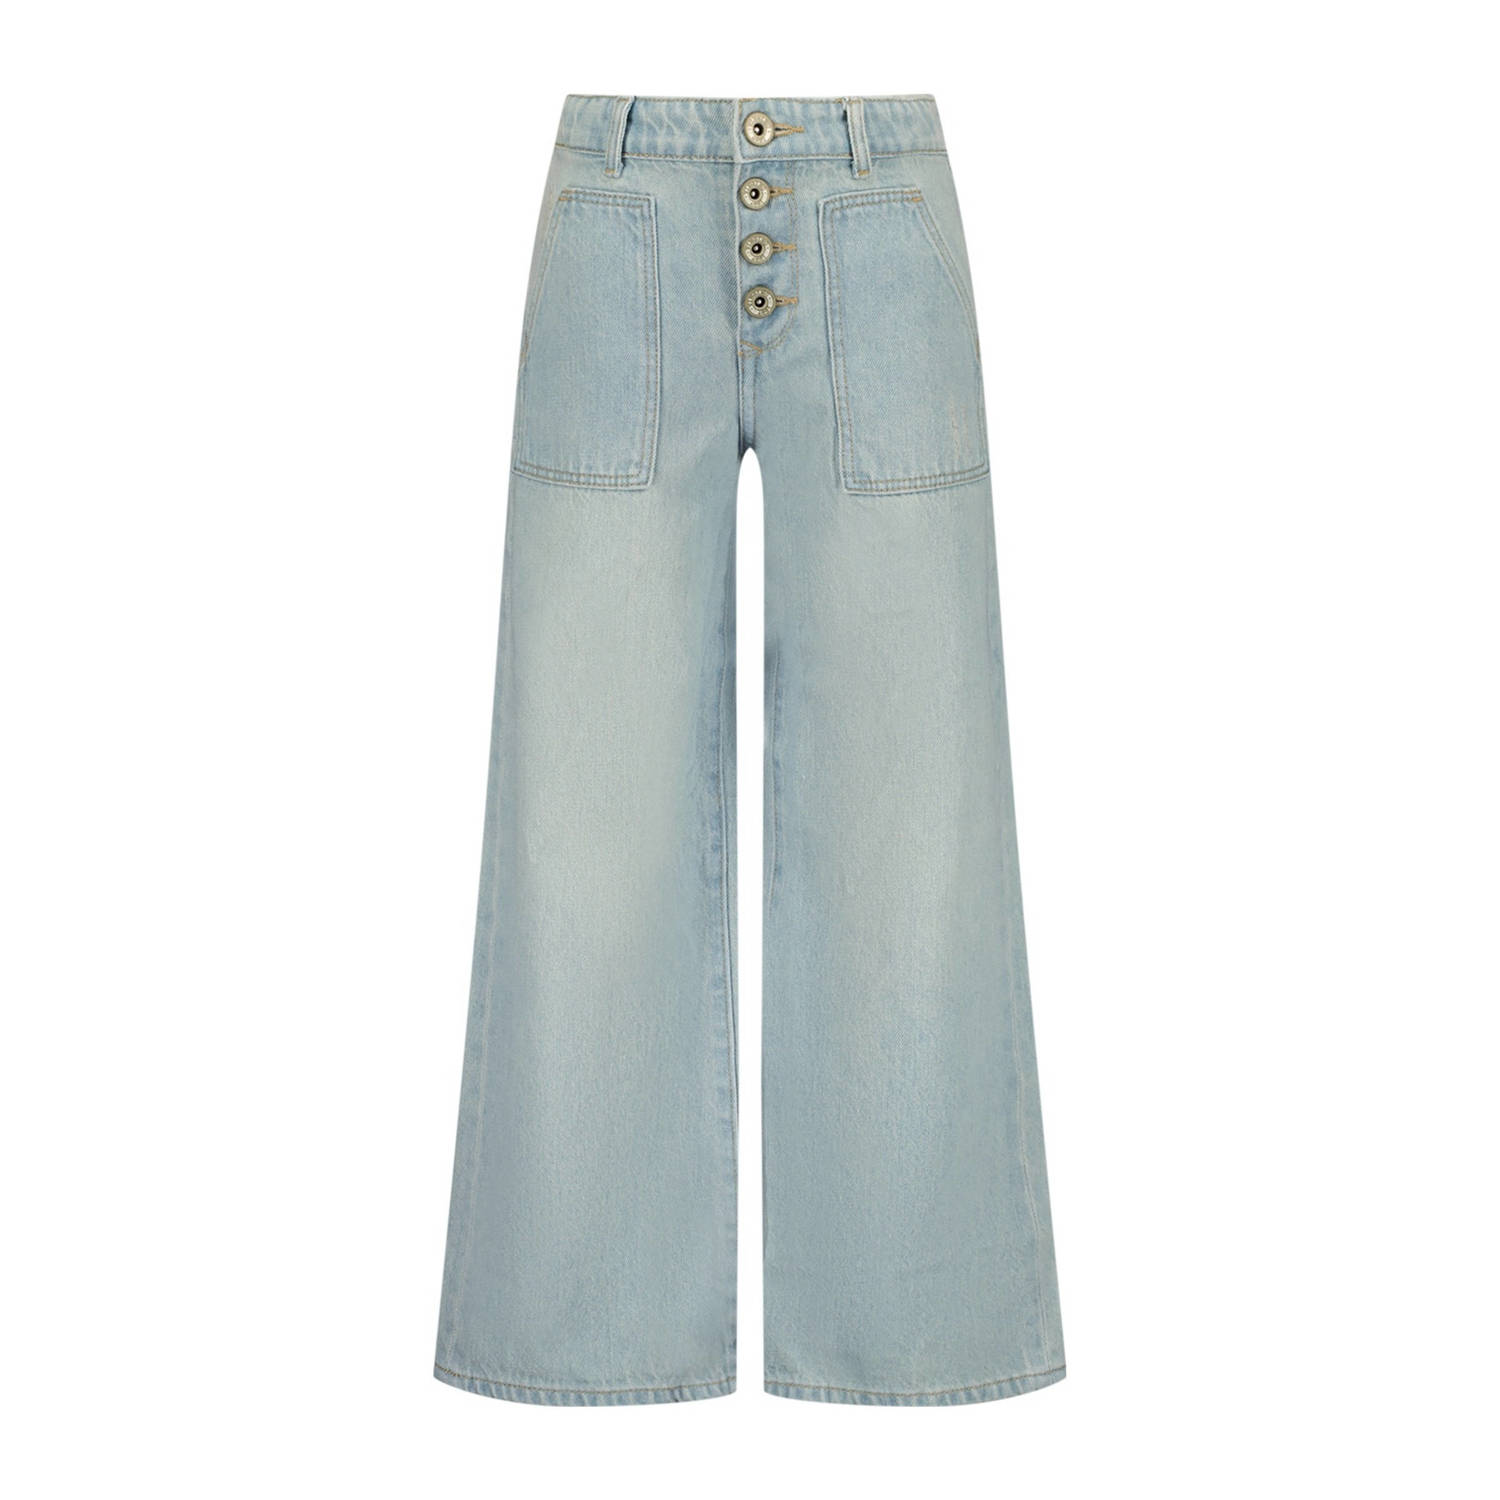 VINGINO high waist wide leg jeans Cassie light vintage Blauw Meisjes Denim 128